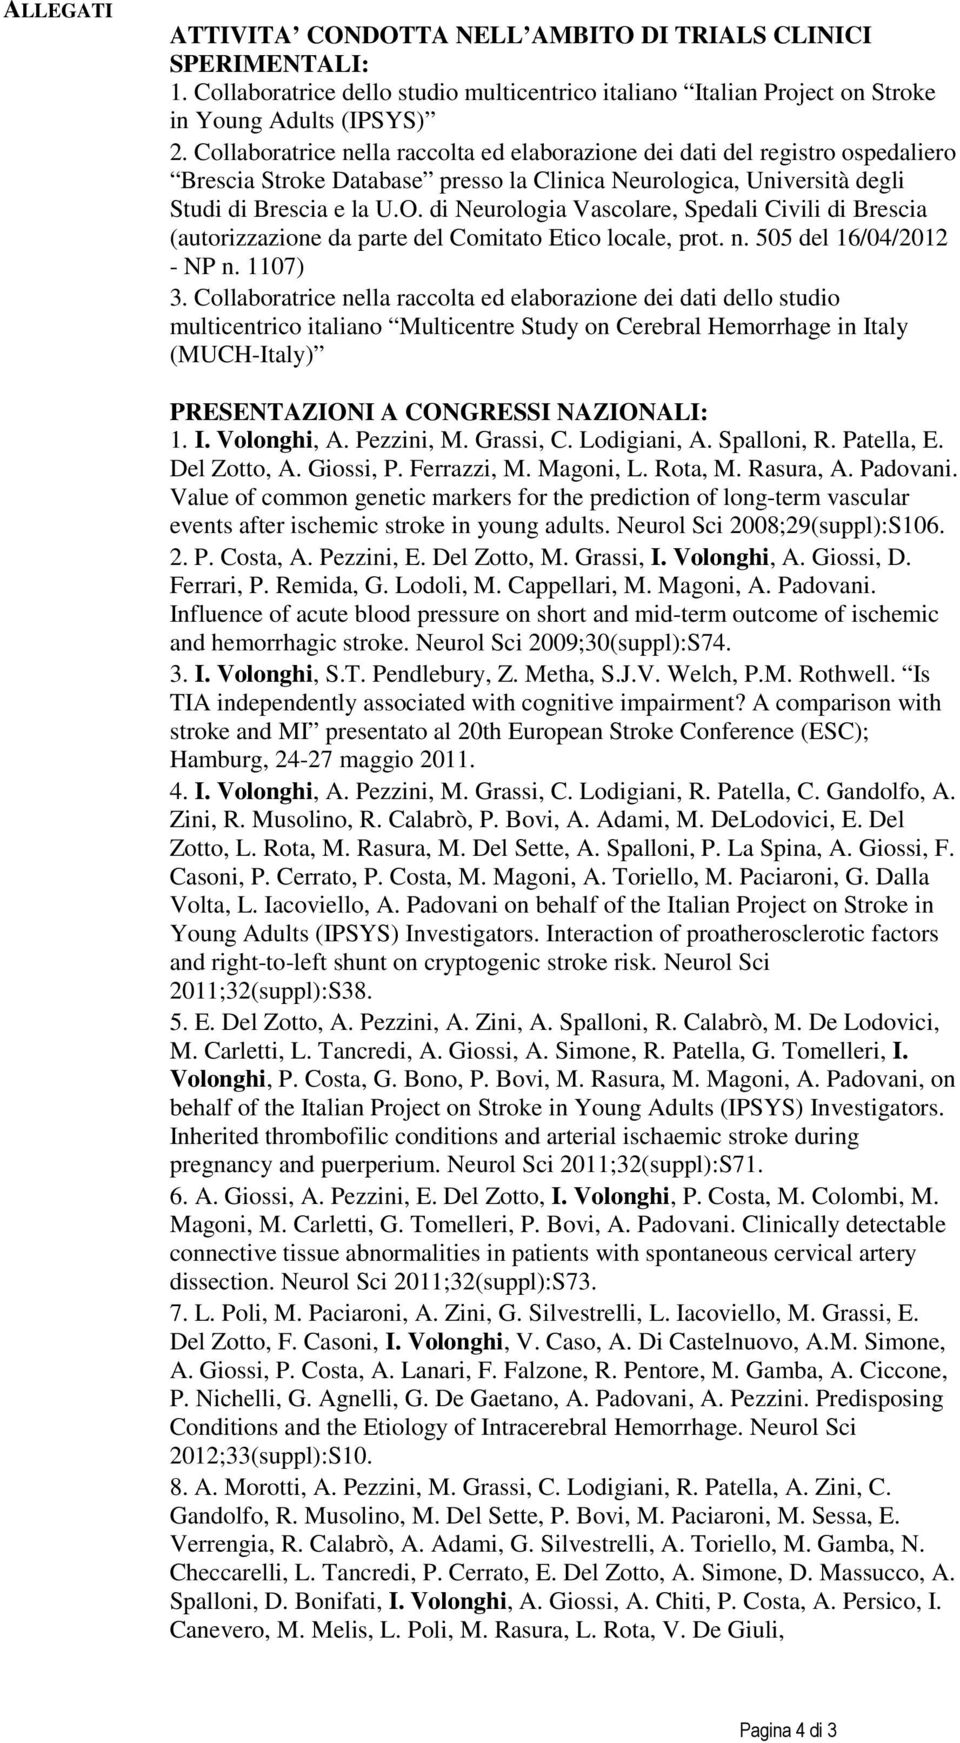 di Neurologia Vascolare, Spedali Civili di Brescia (autorizzazione da parte del Comitato Etico locale, prot. n. 505 del 16/04/2012 - NP n. 1107) 3.